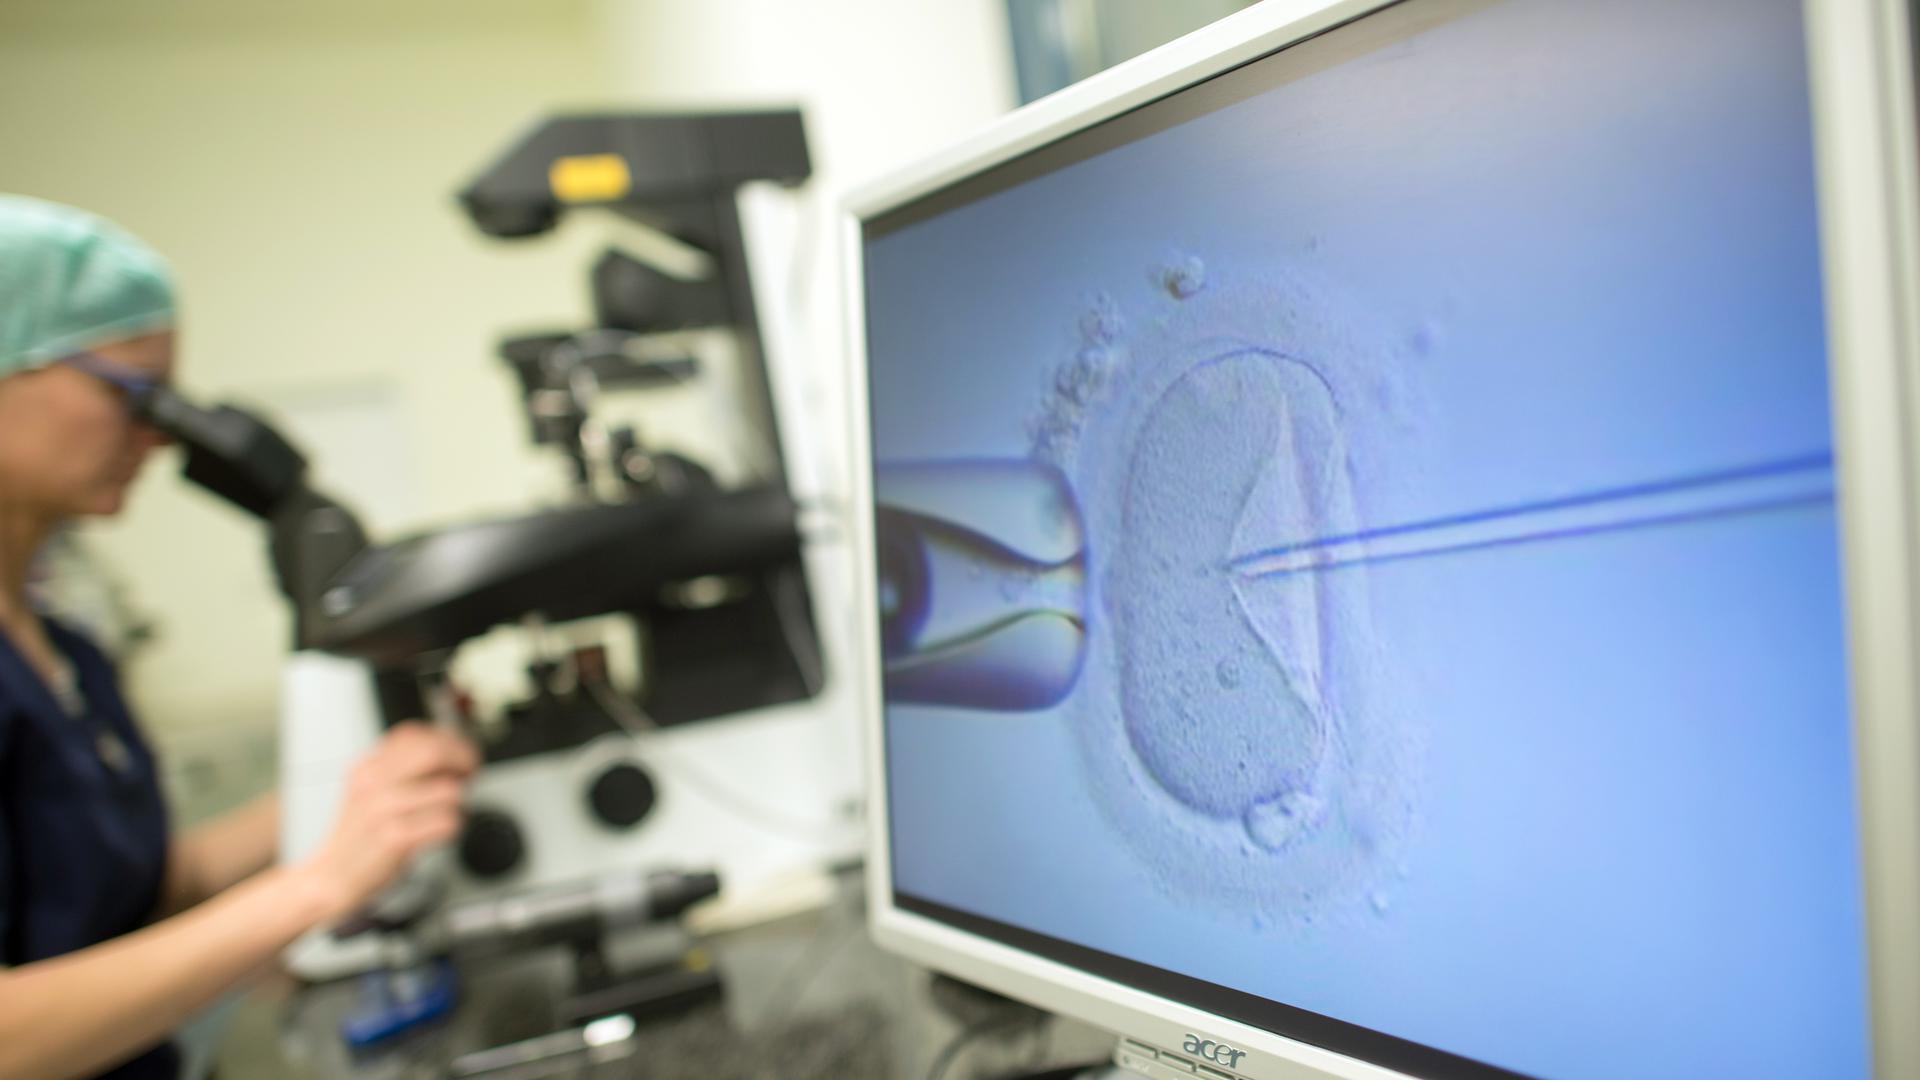 Ein Monitor zeigt in einem Kinderwunschzentrum eine Intrazytoplasmatische Spermieninjektion (Icsi). Bei der Behandlung wird einer Eizelle ein Spermium injiziert. Im Hintergrund sitzt eine Biologin an dem Mikroskop und steuert den Vorgang.